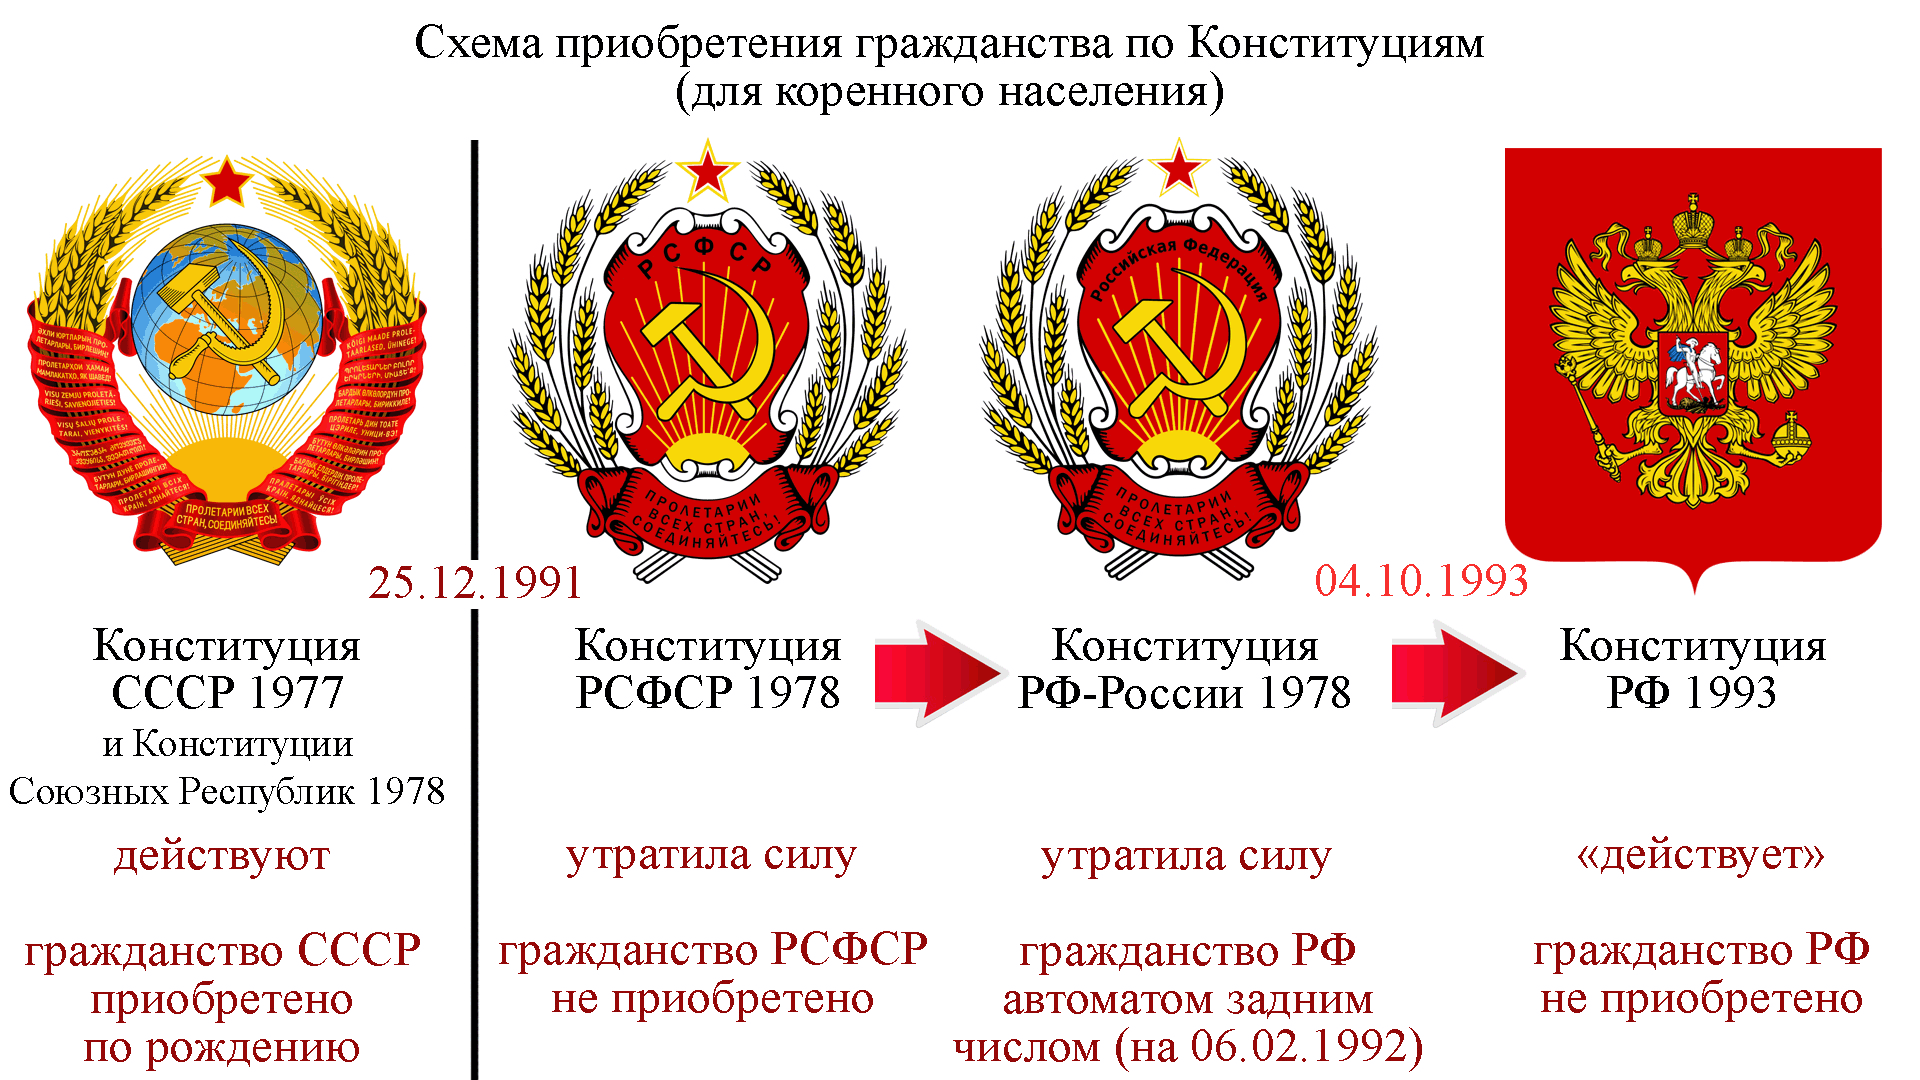 Отличия советского и современного